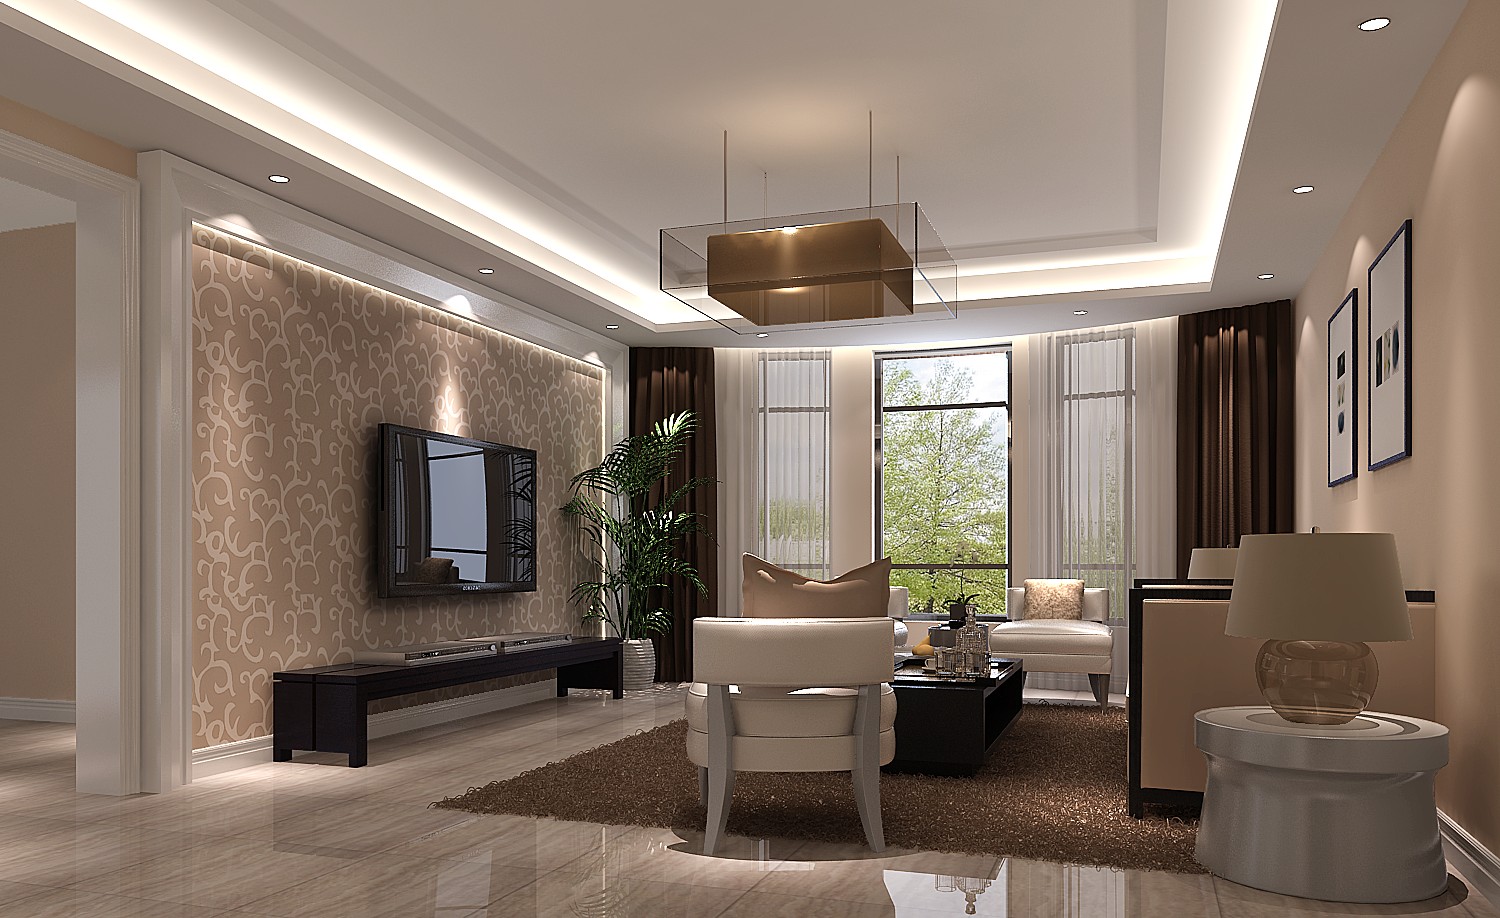 高度国际 上林世家 简约风格 公寓 客厅图片来自高度国际在上林世家-简约风格的分享